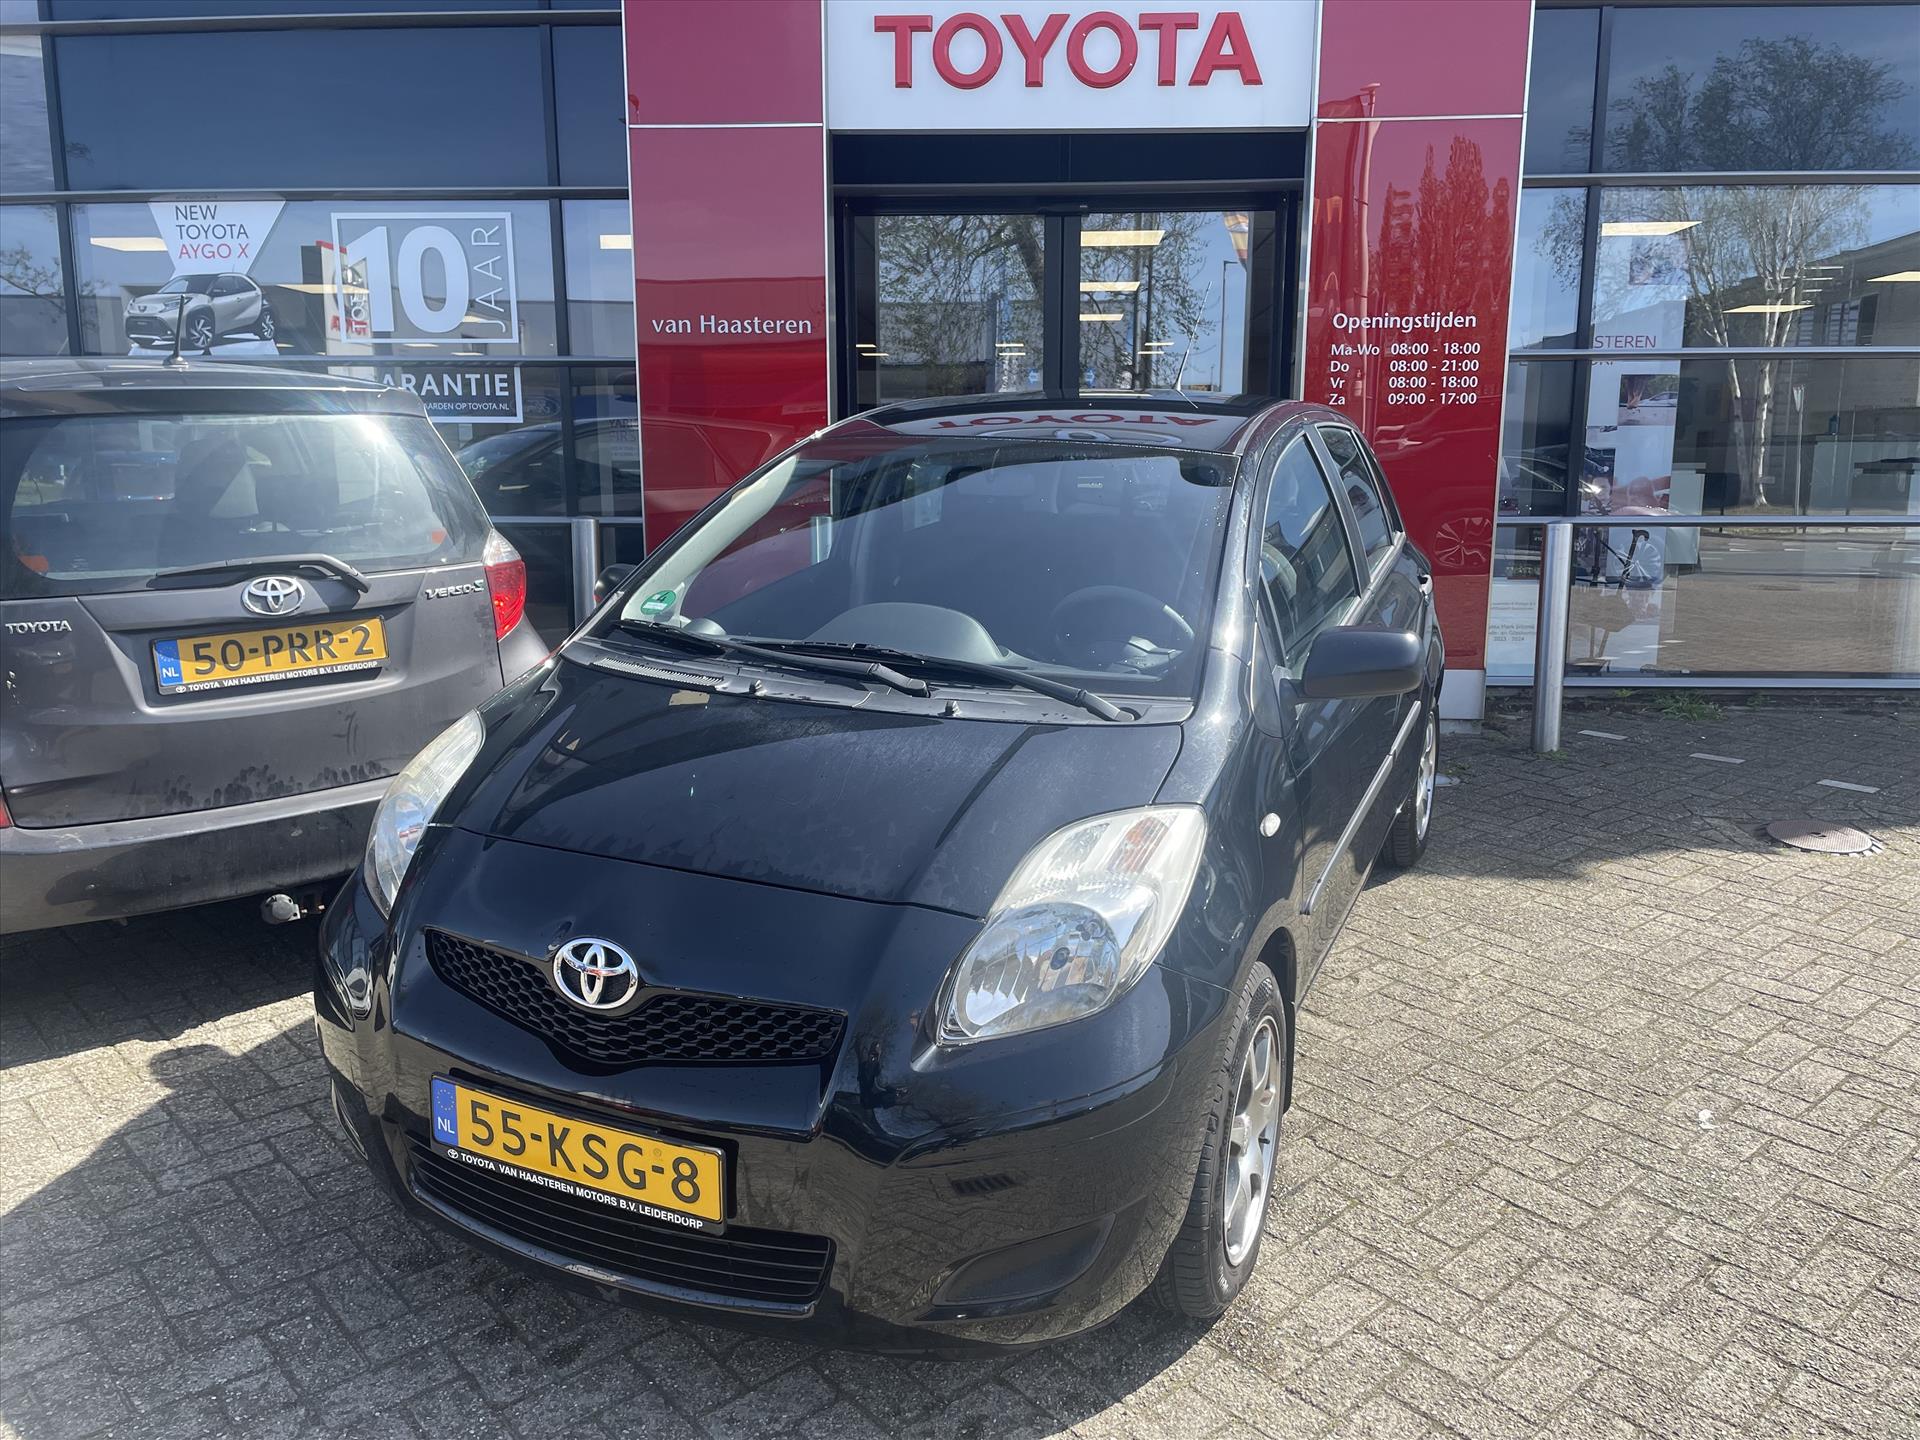 Toyota Yaris 1.3 16V VVT-I 5DR Comfort bij viaBOVAG.nl